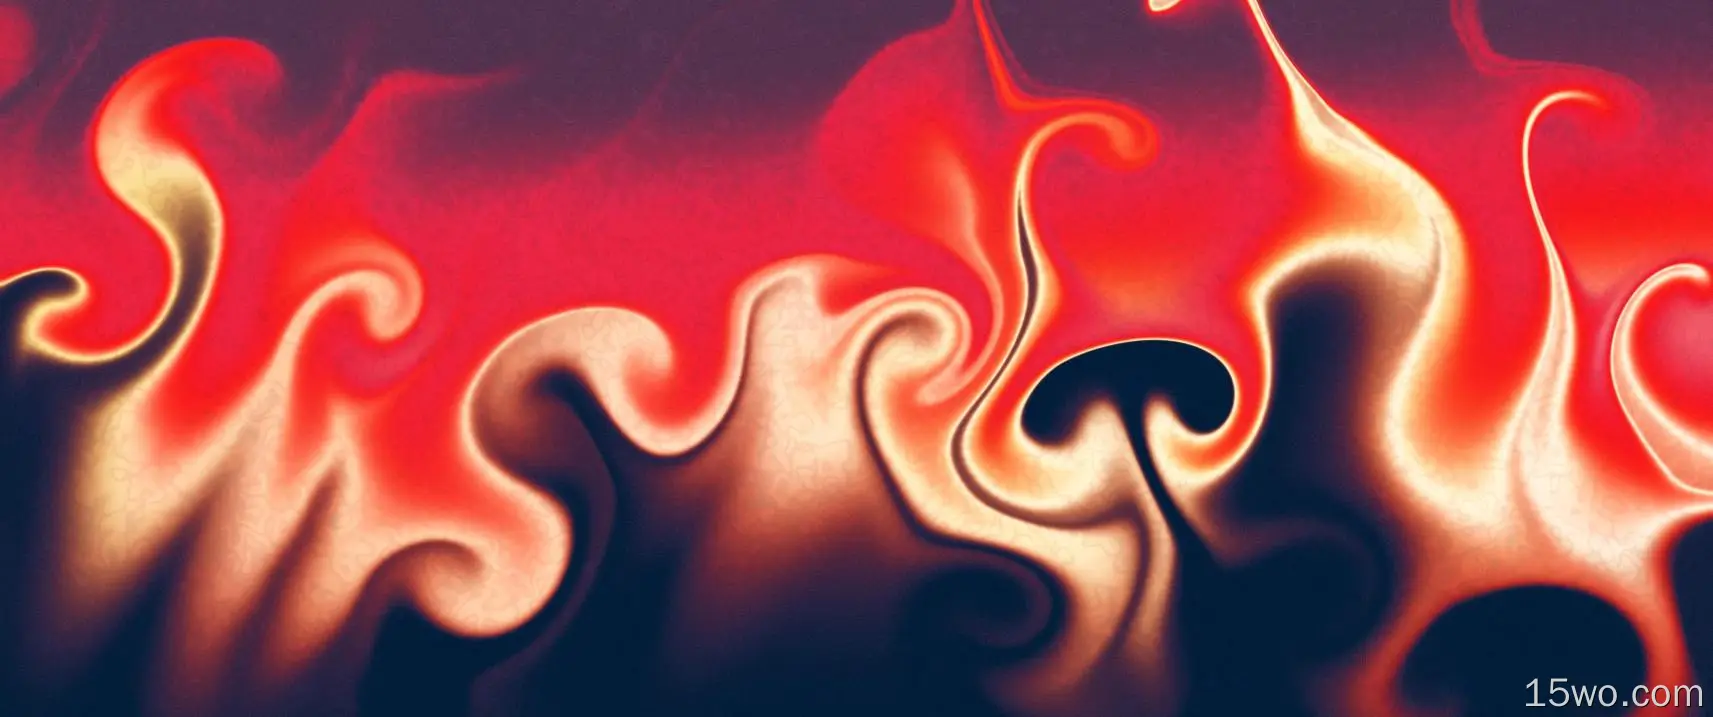 火焰,人类的身体,橙色,红色的,气体,壁纸,4096x1714